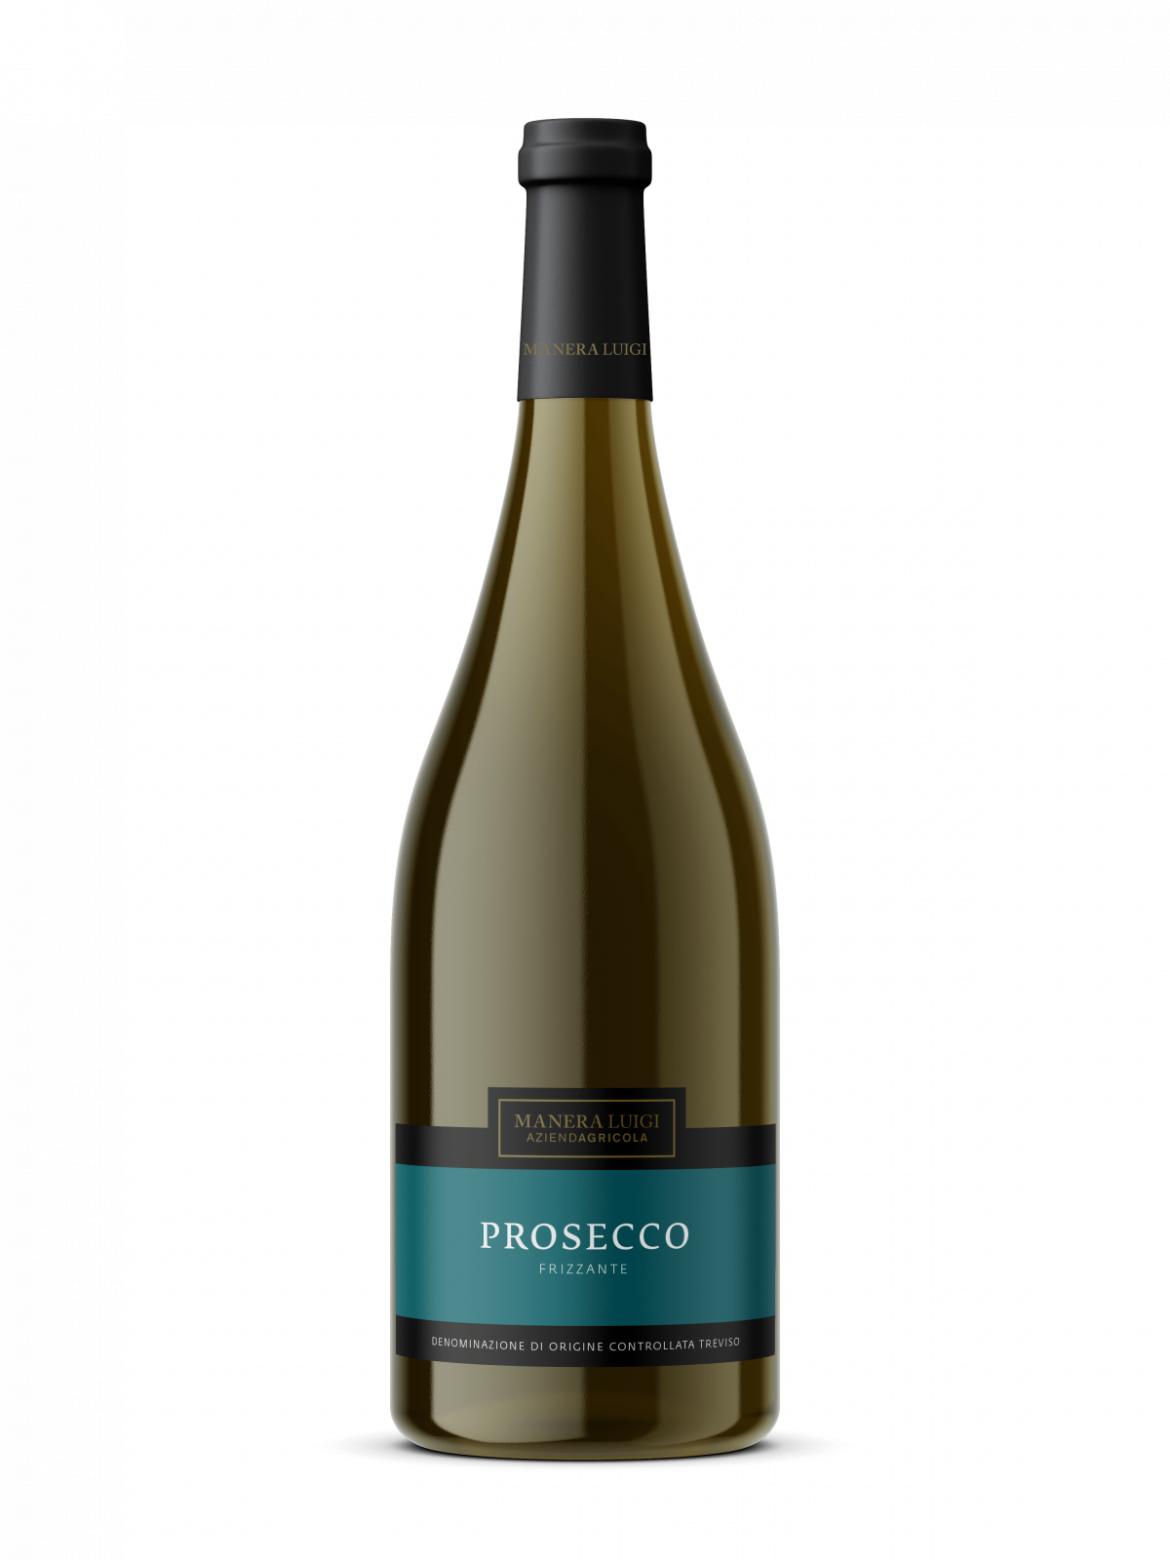 Prosecco-frizzante-min-1200x1600-1.png